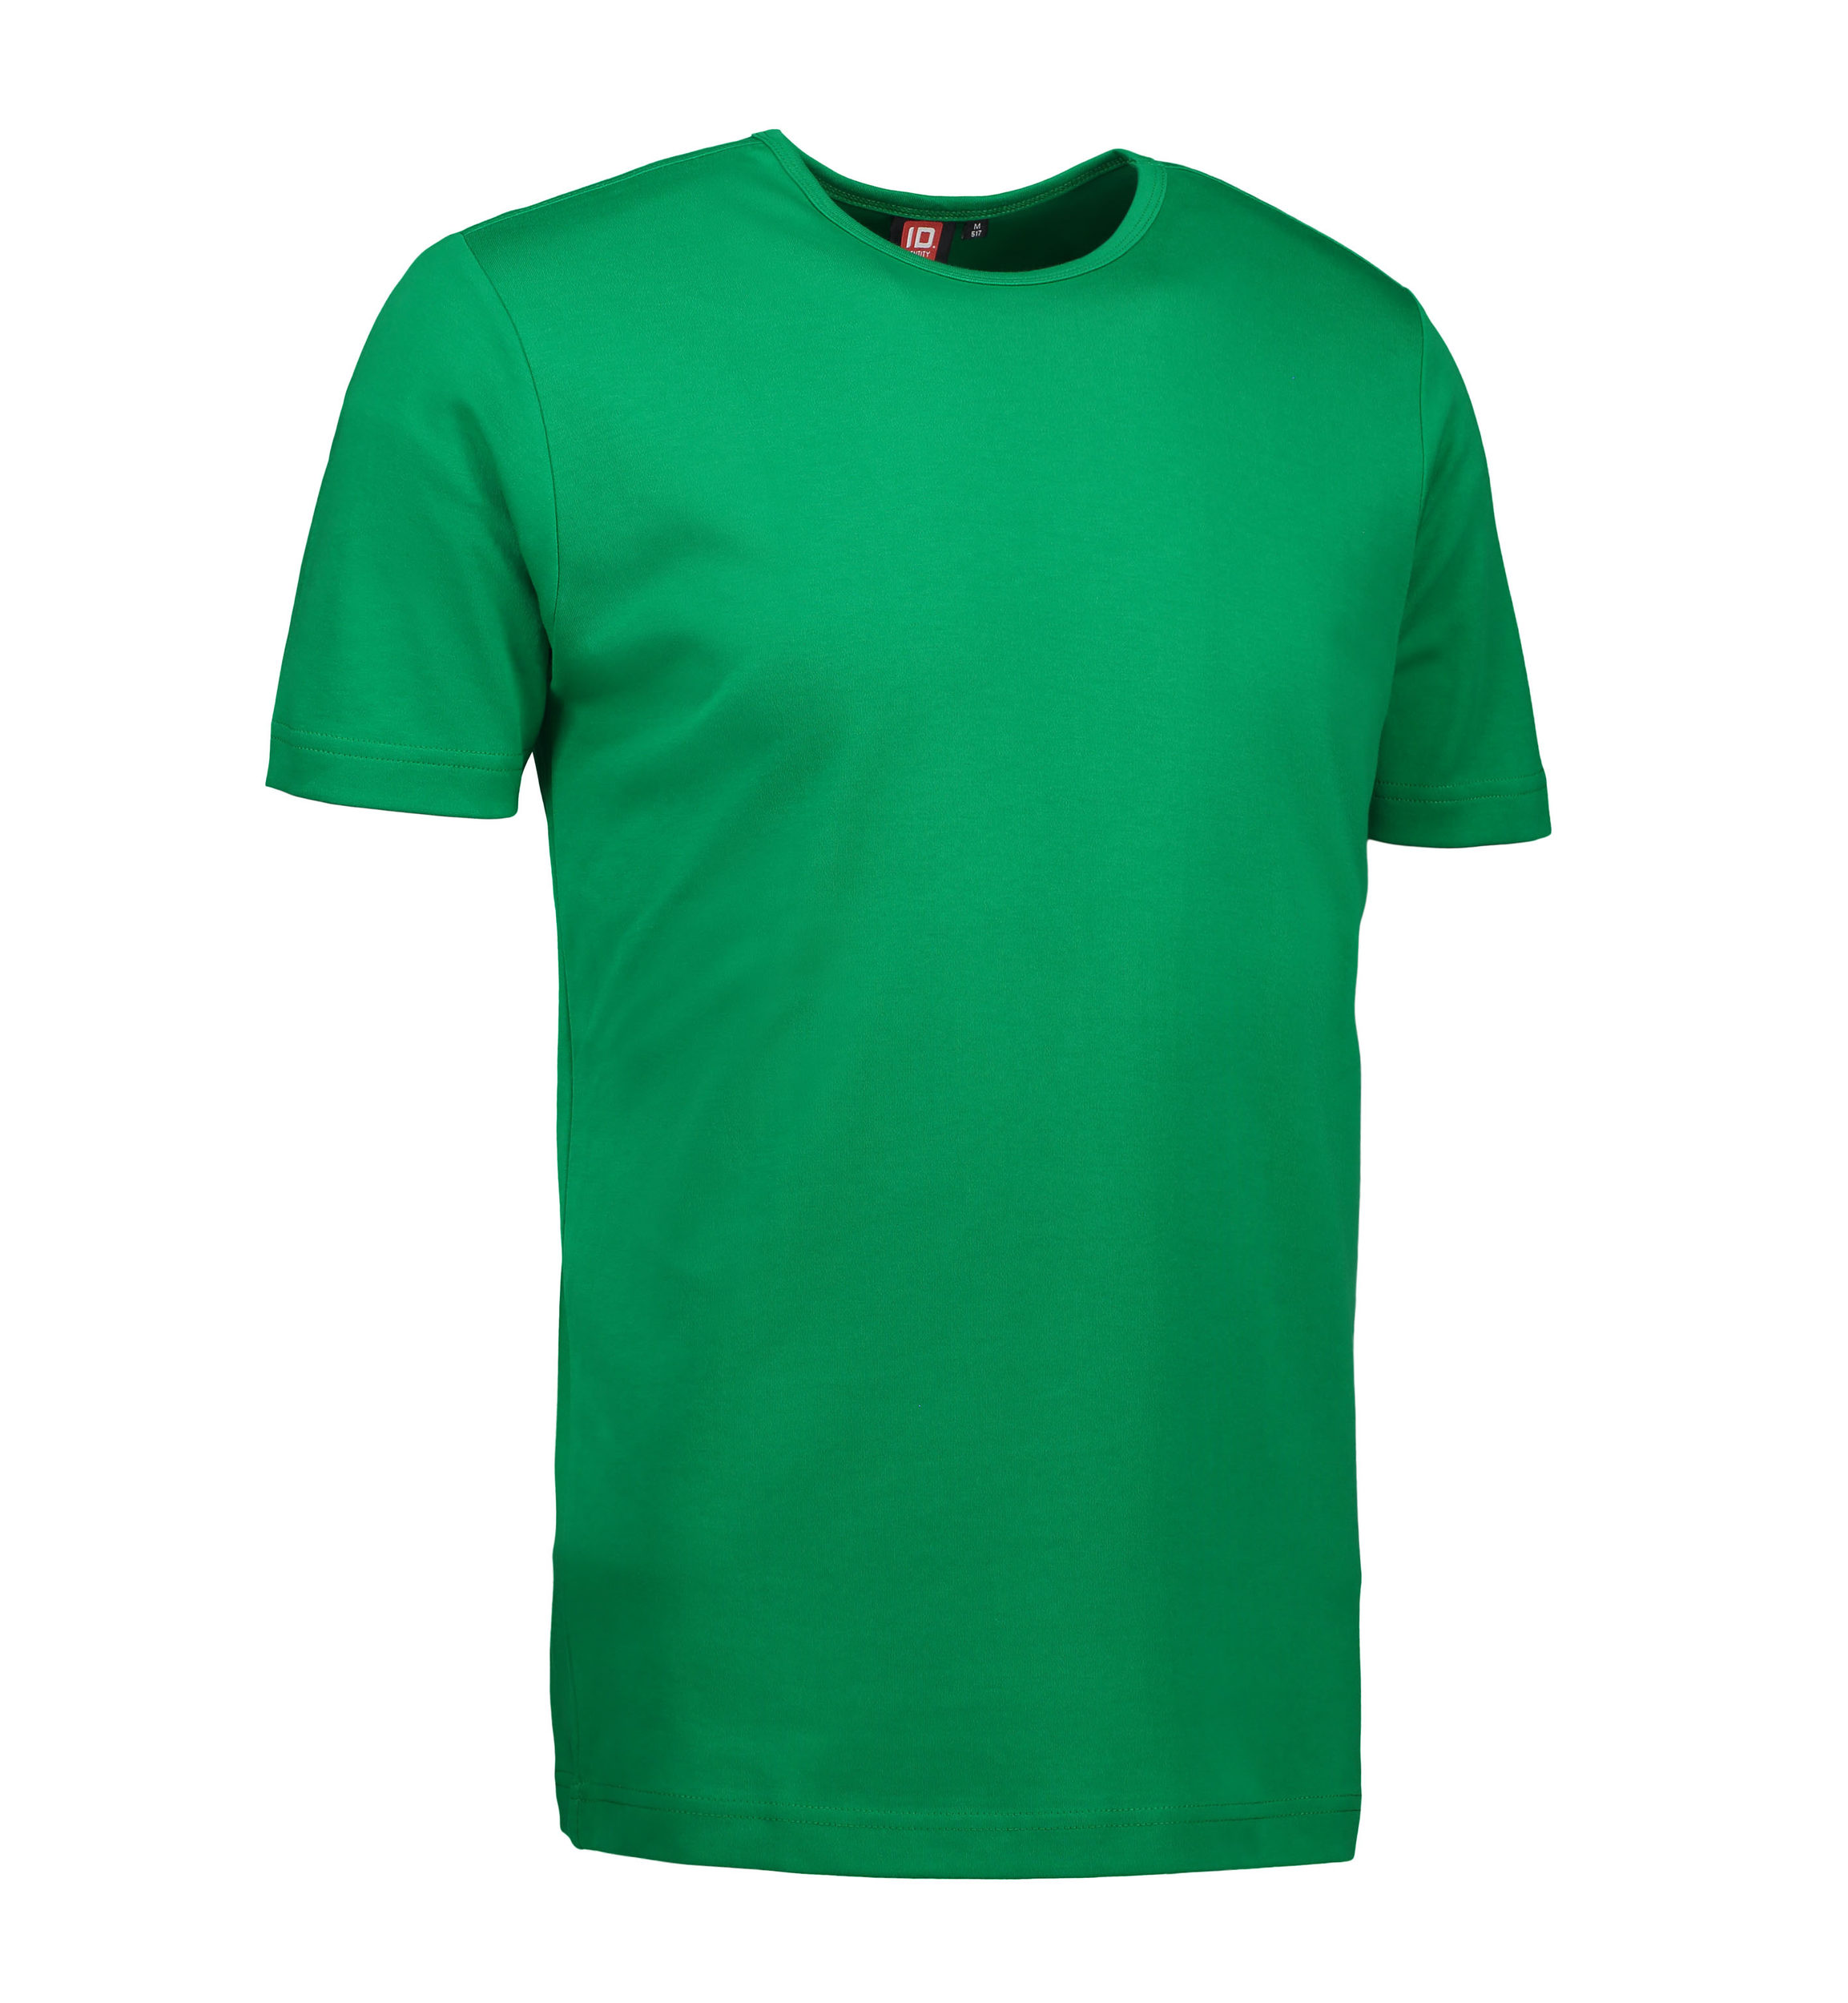 Billede af Grøn t-shirt med rund hals til mænd - XL hos Sygeplejebutikken.dk